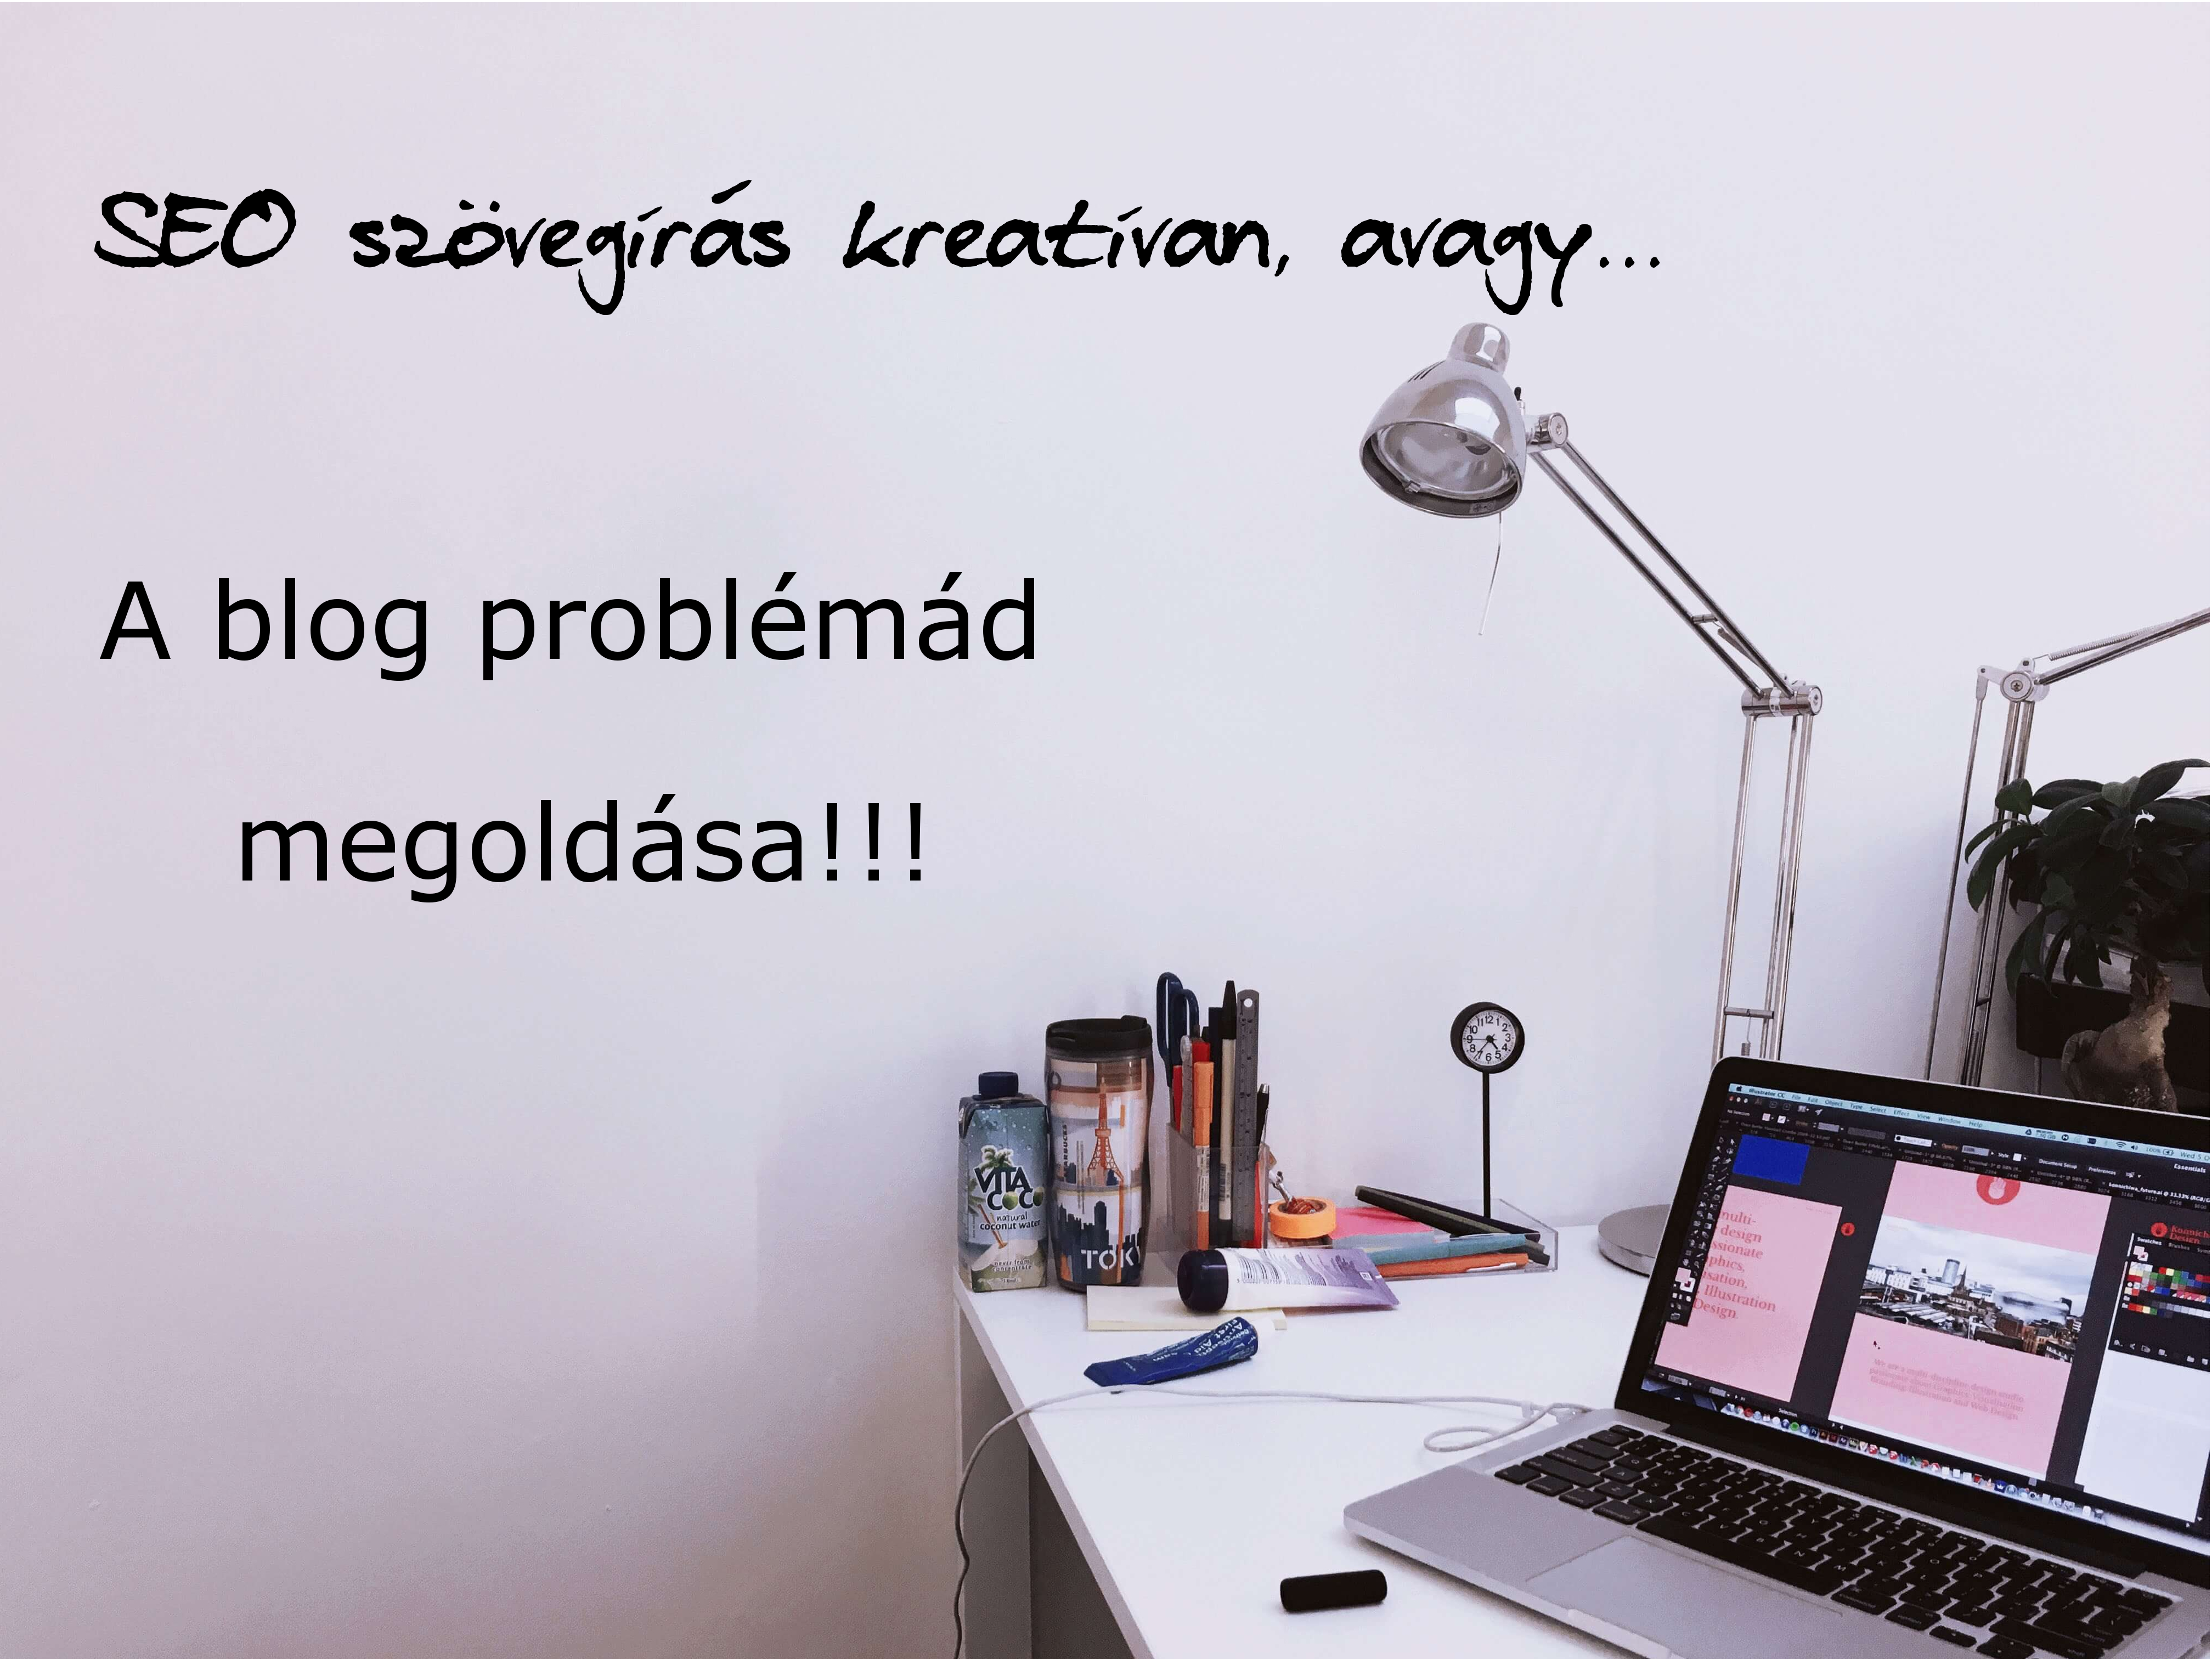 SEO szövegírás kreatívan, avagy a blog problémád megoldása!